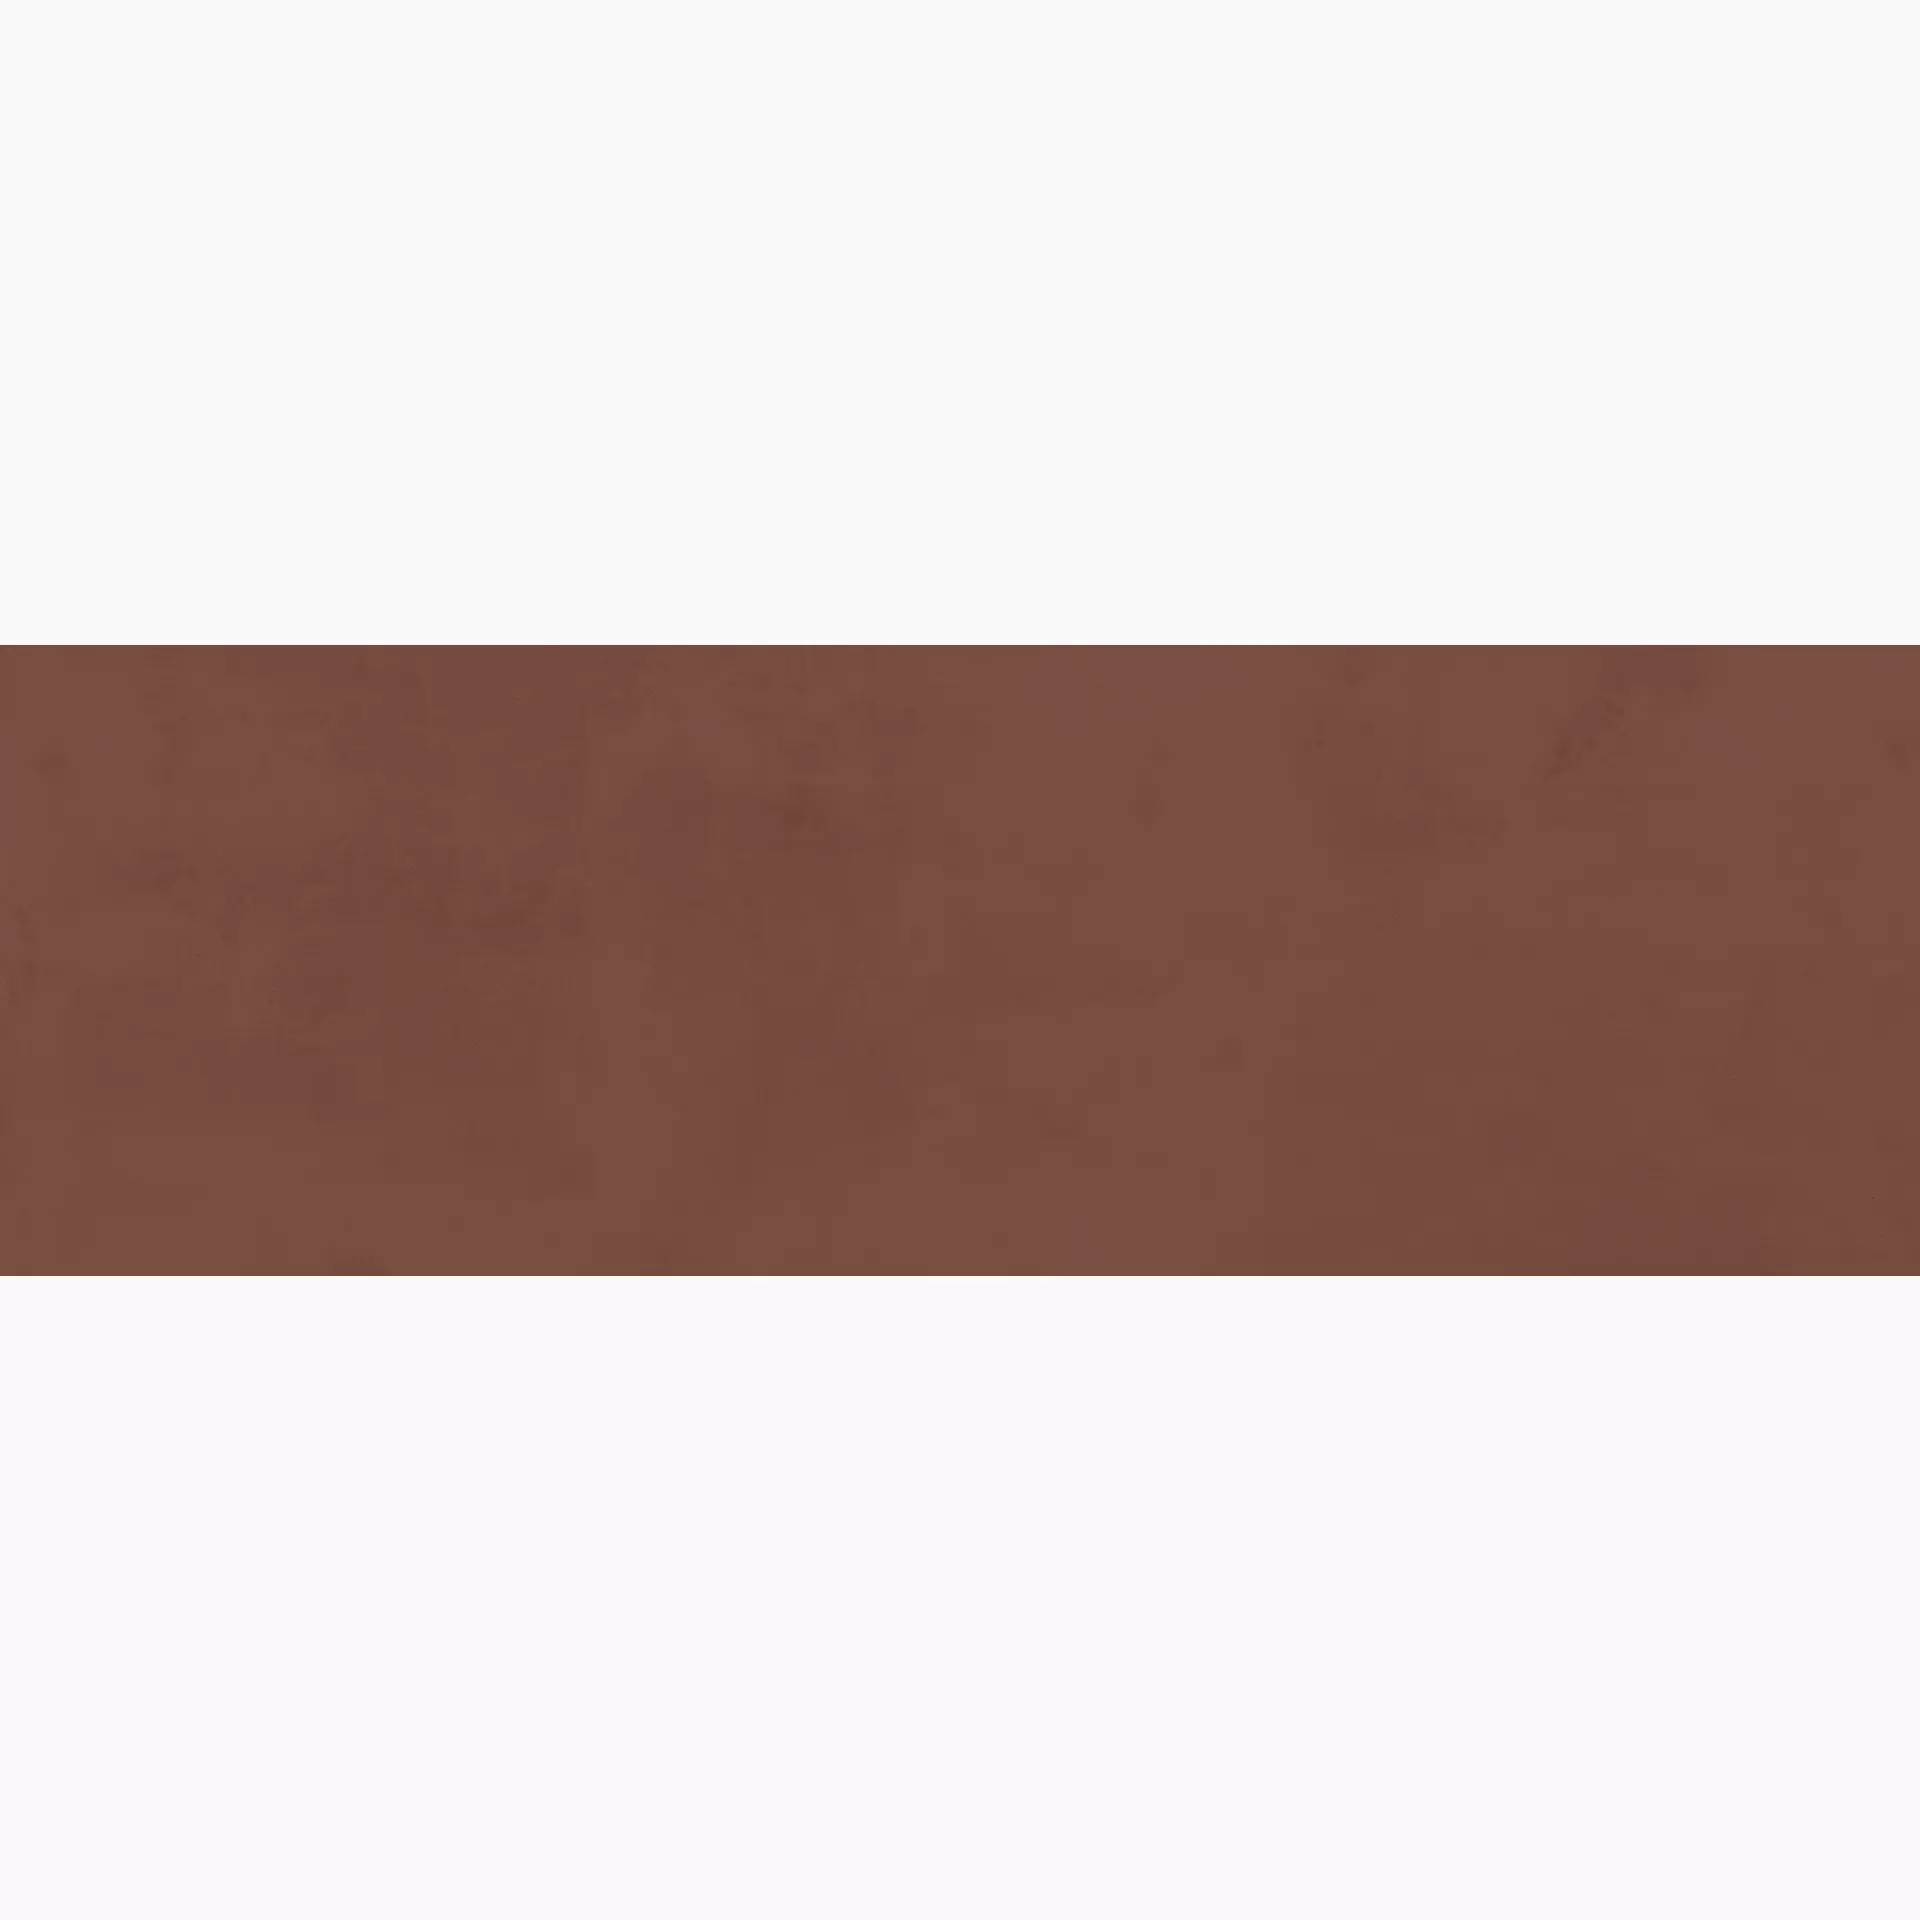 Ragno Now Terracotta Semi – Matt R9MU semi – matt 25x76cm 9mm